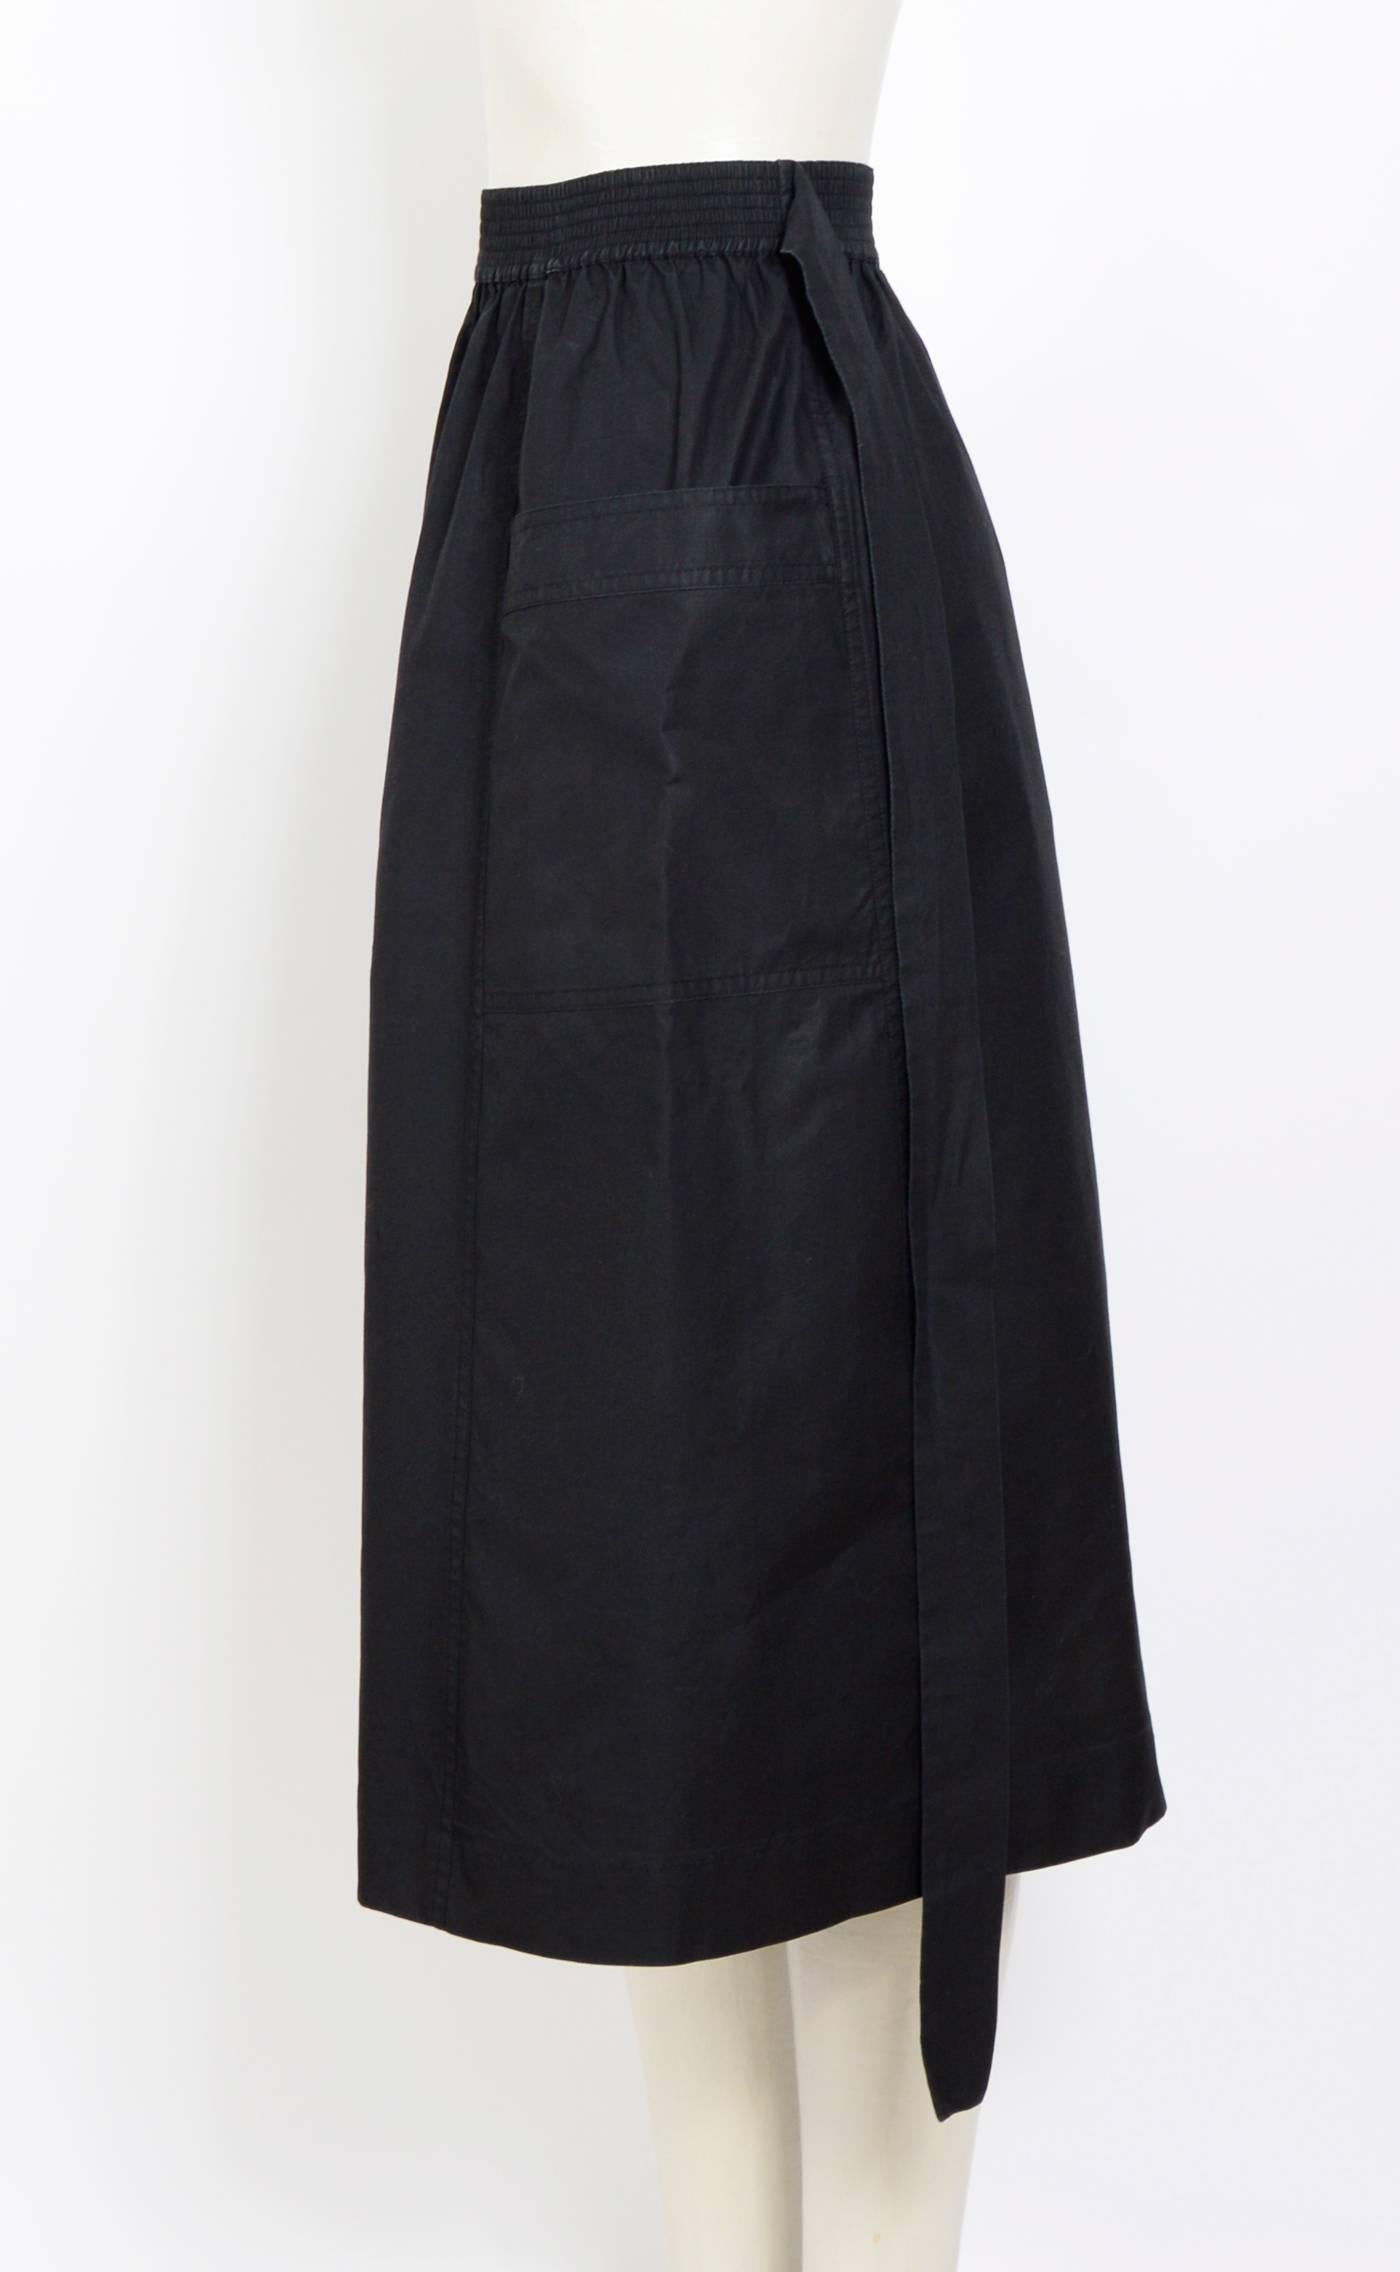 Black Yves Saint Laurent cotton black skirt, 1970's